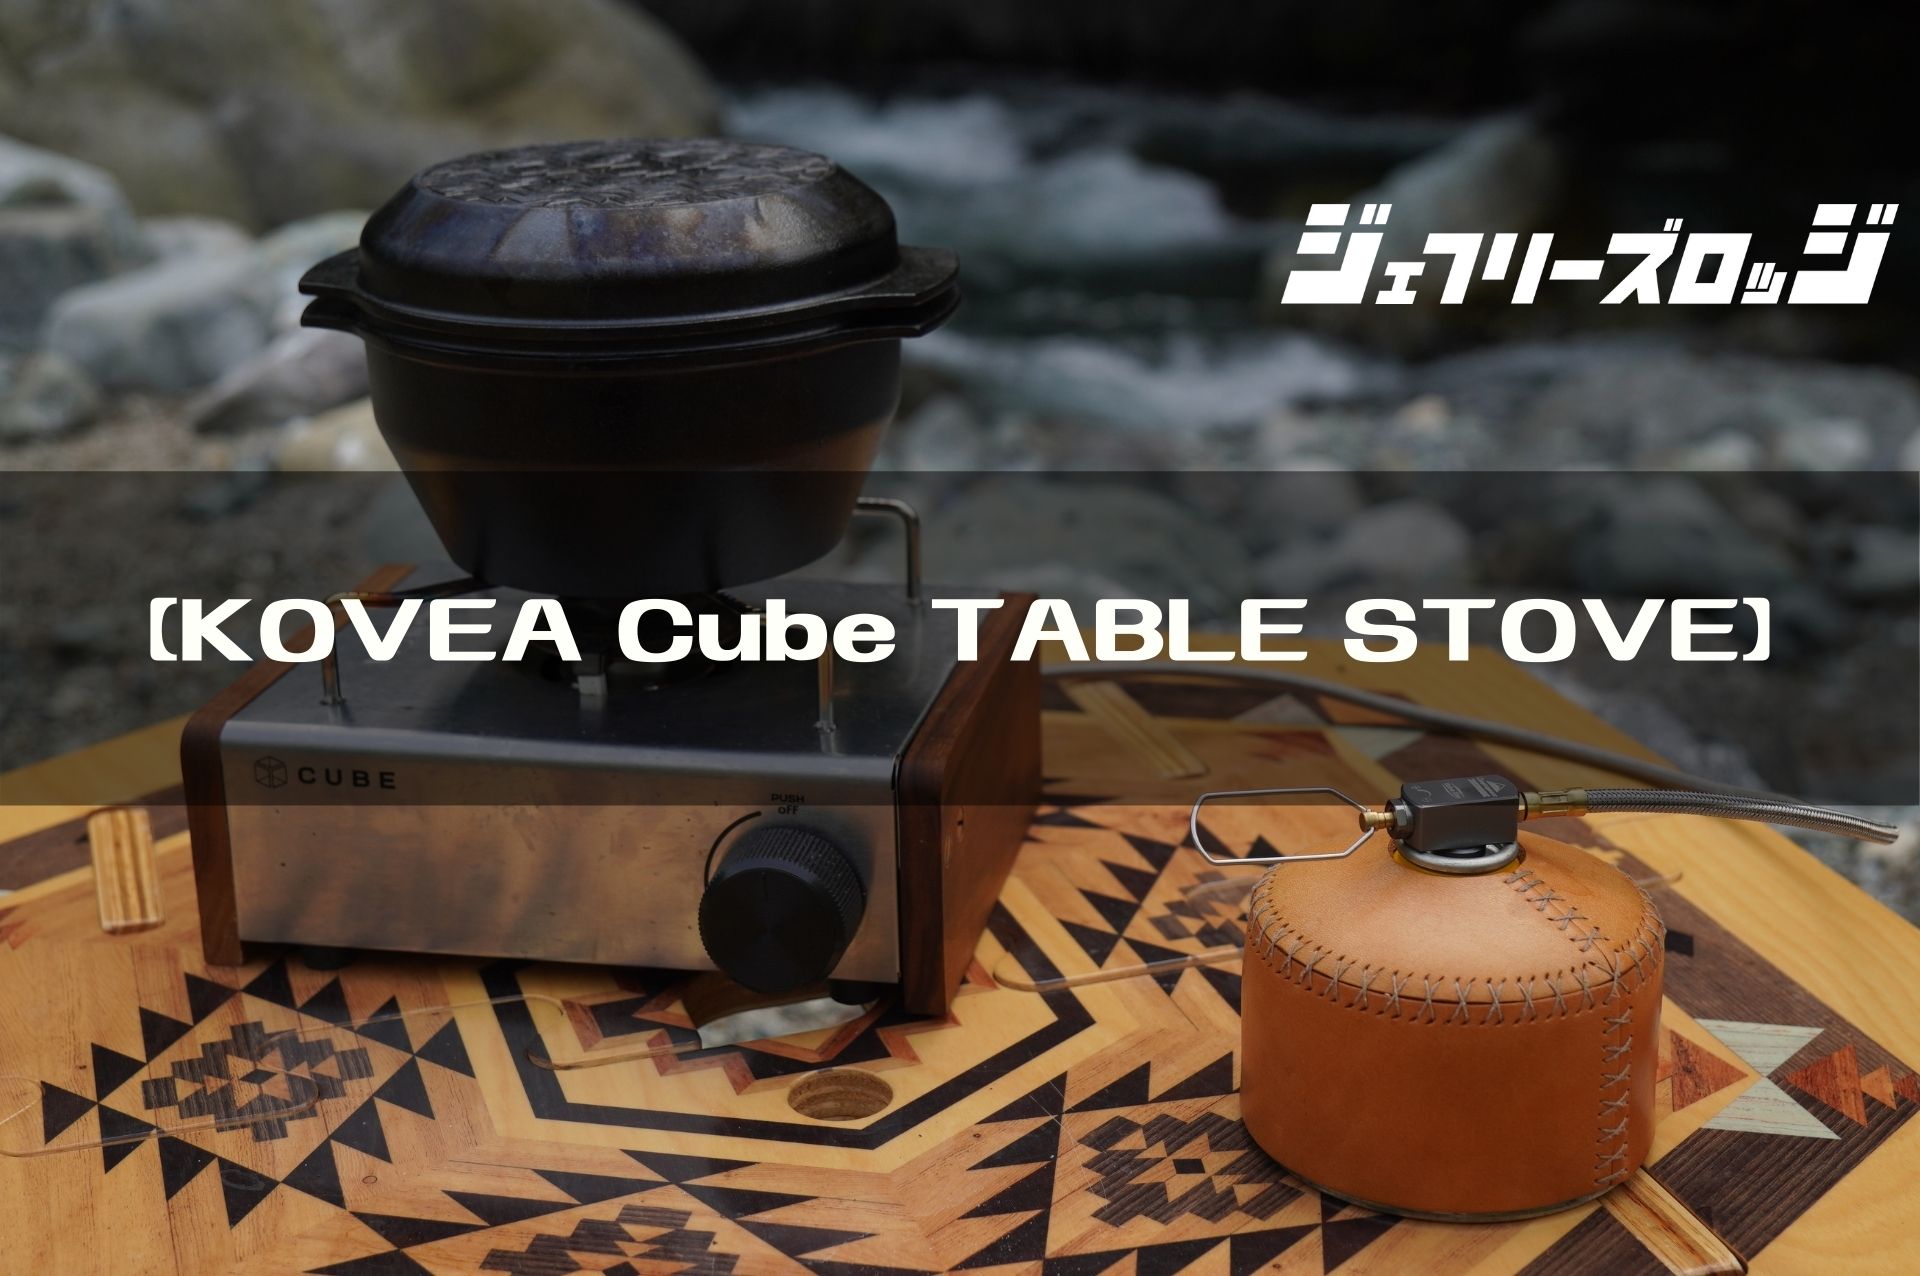 3520円 新作 kovea KGR-1503 Cube キューブ TABLE TOP STOVE